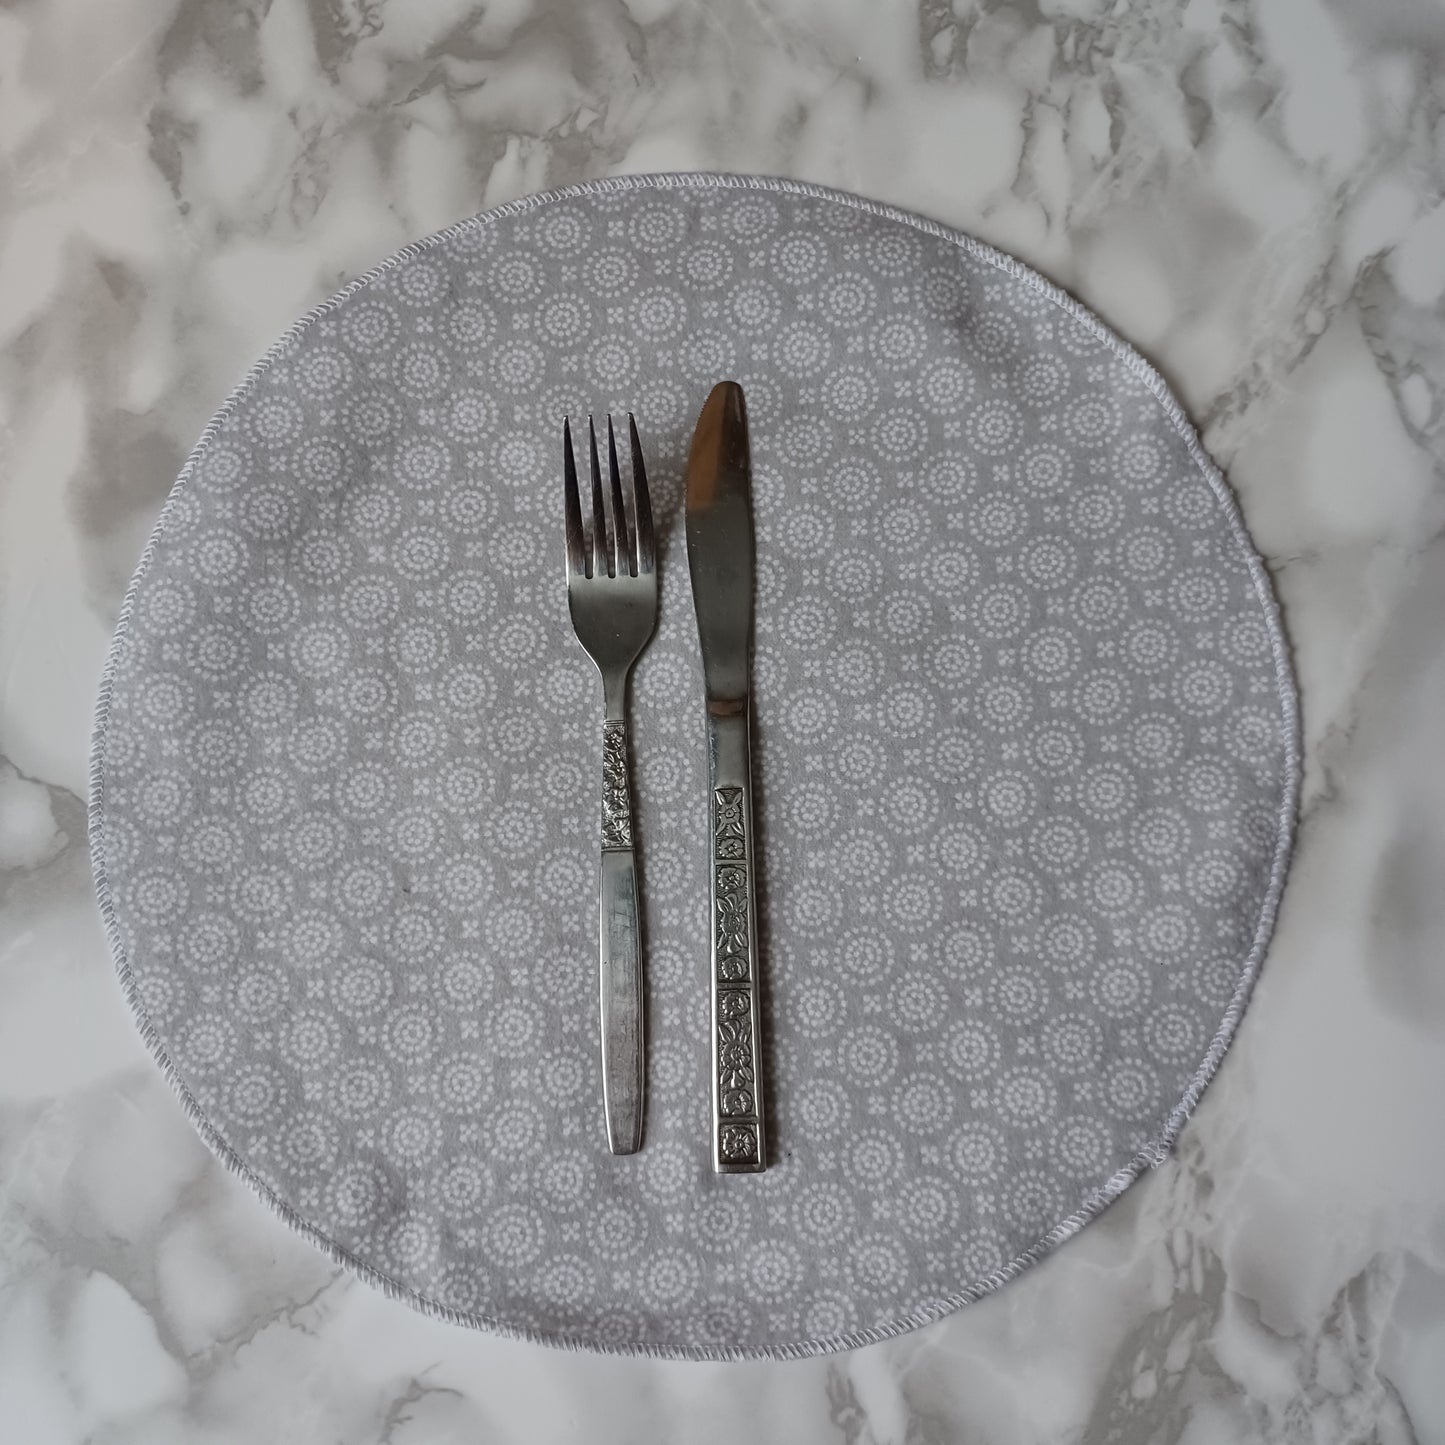 Serviettes de table et Essuie-tout-Gris pâle avec ronds et designs blancs/Napkins and Paperless towels-Pale gray with circles and white designs